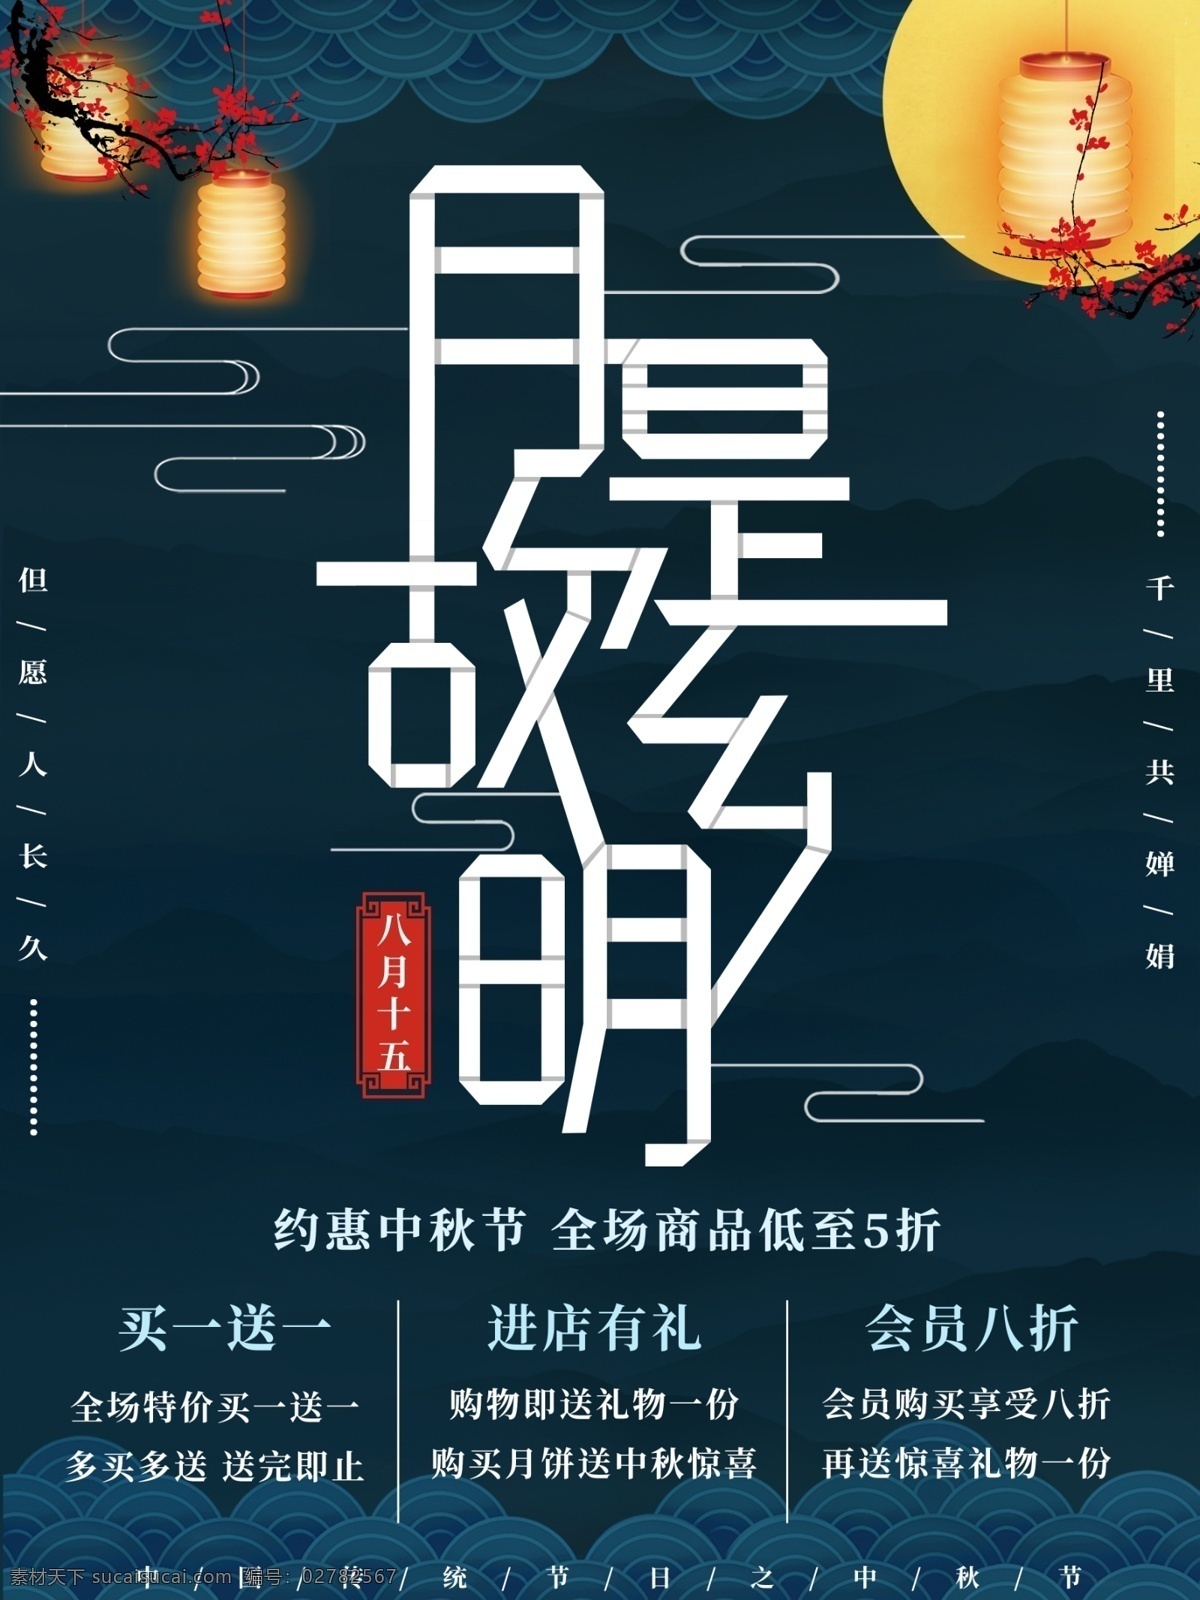 简约 月 故乡 明 中秋 海报 传统 中国风 节日 月是故乡明 八月十五 古风 团圆